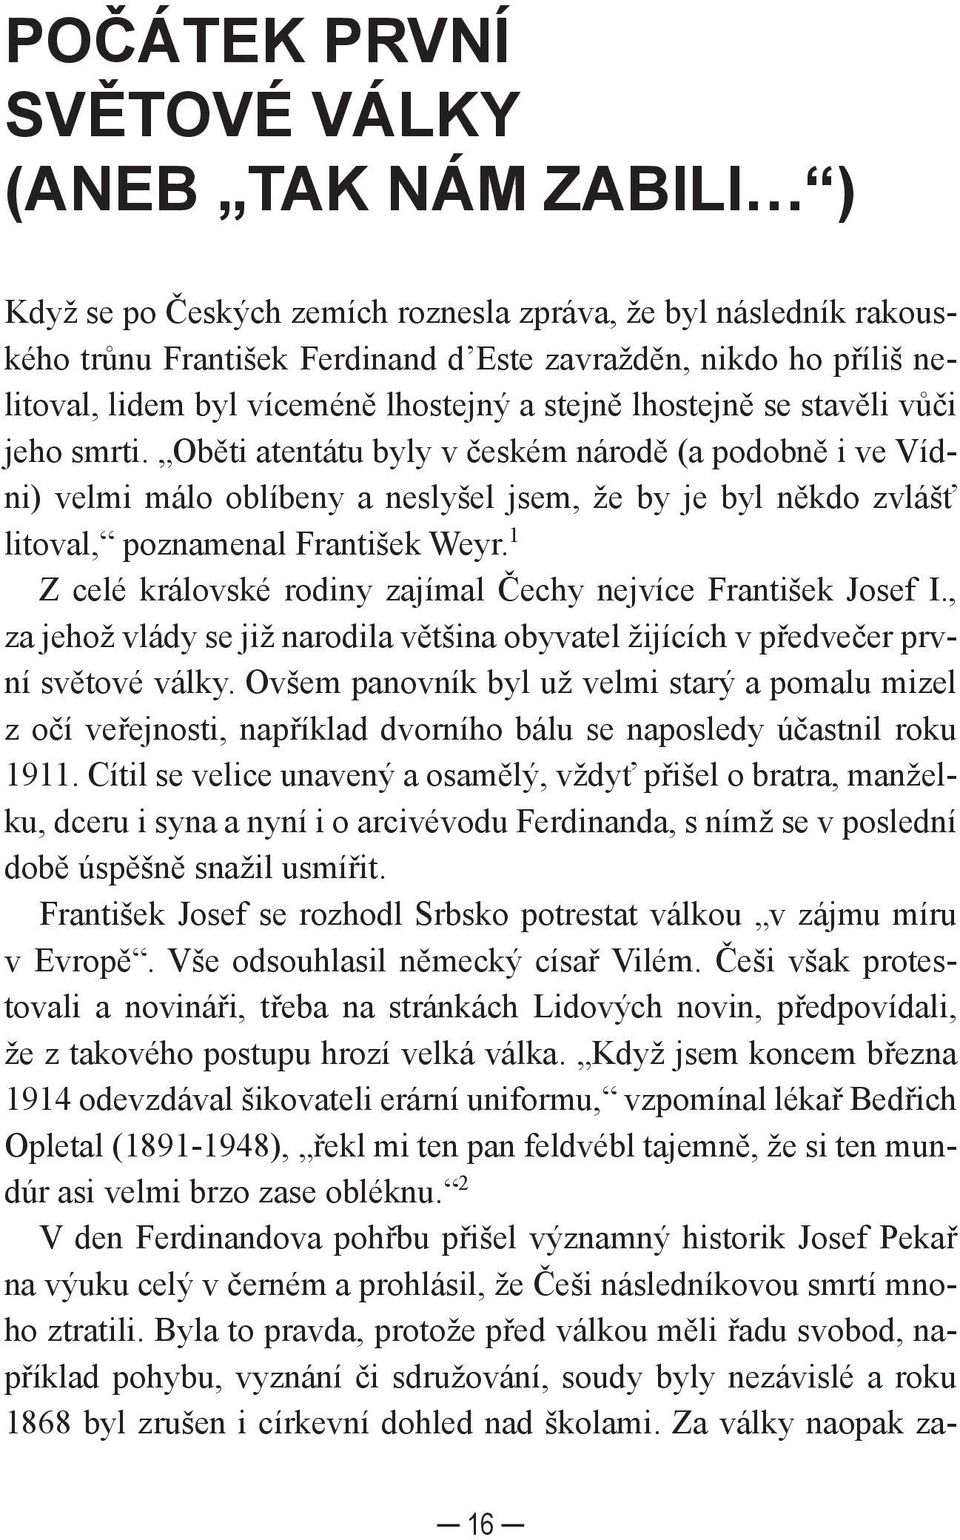 Oběti atentátu byly v českém národě (a podobně i ve Vídni) velmi málo oblíbeny a neslyšel jsem, že by je byl někdo zvlášť litoval, poznamenal František Weyr.